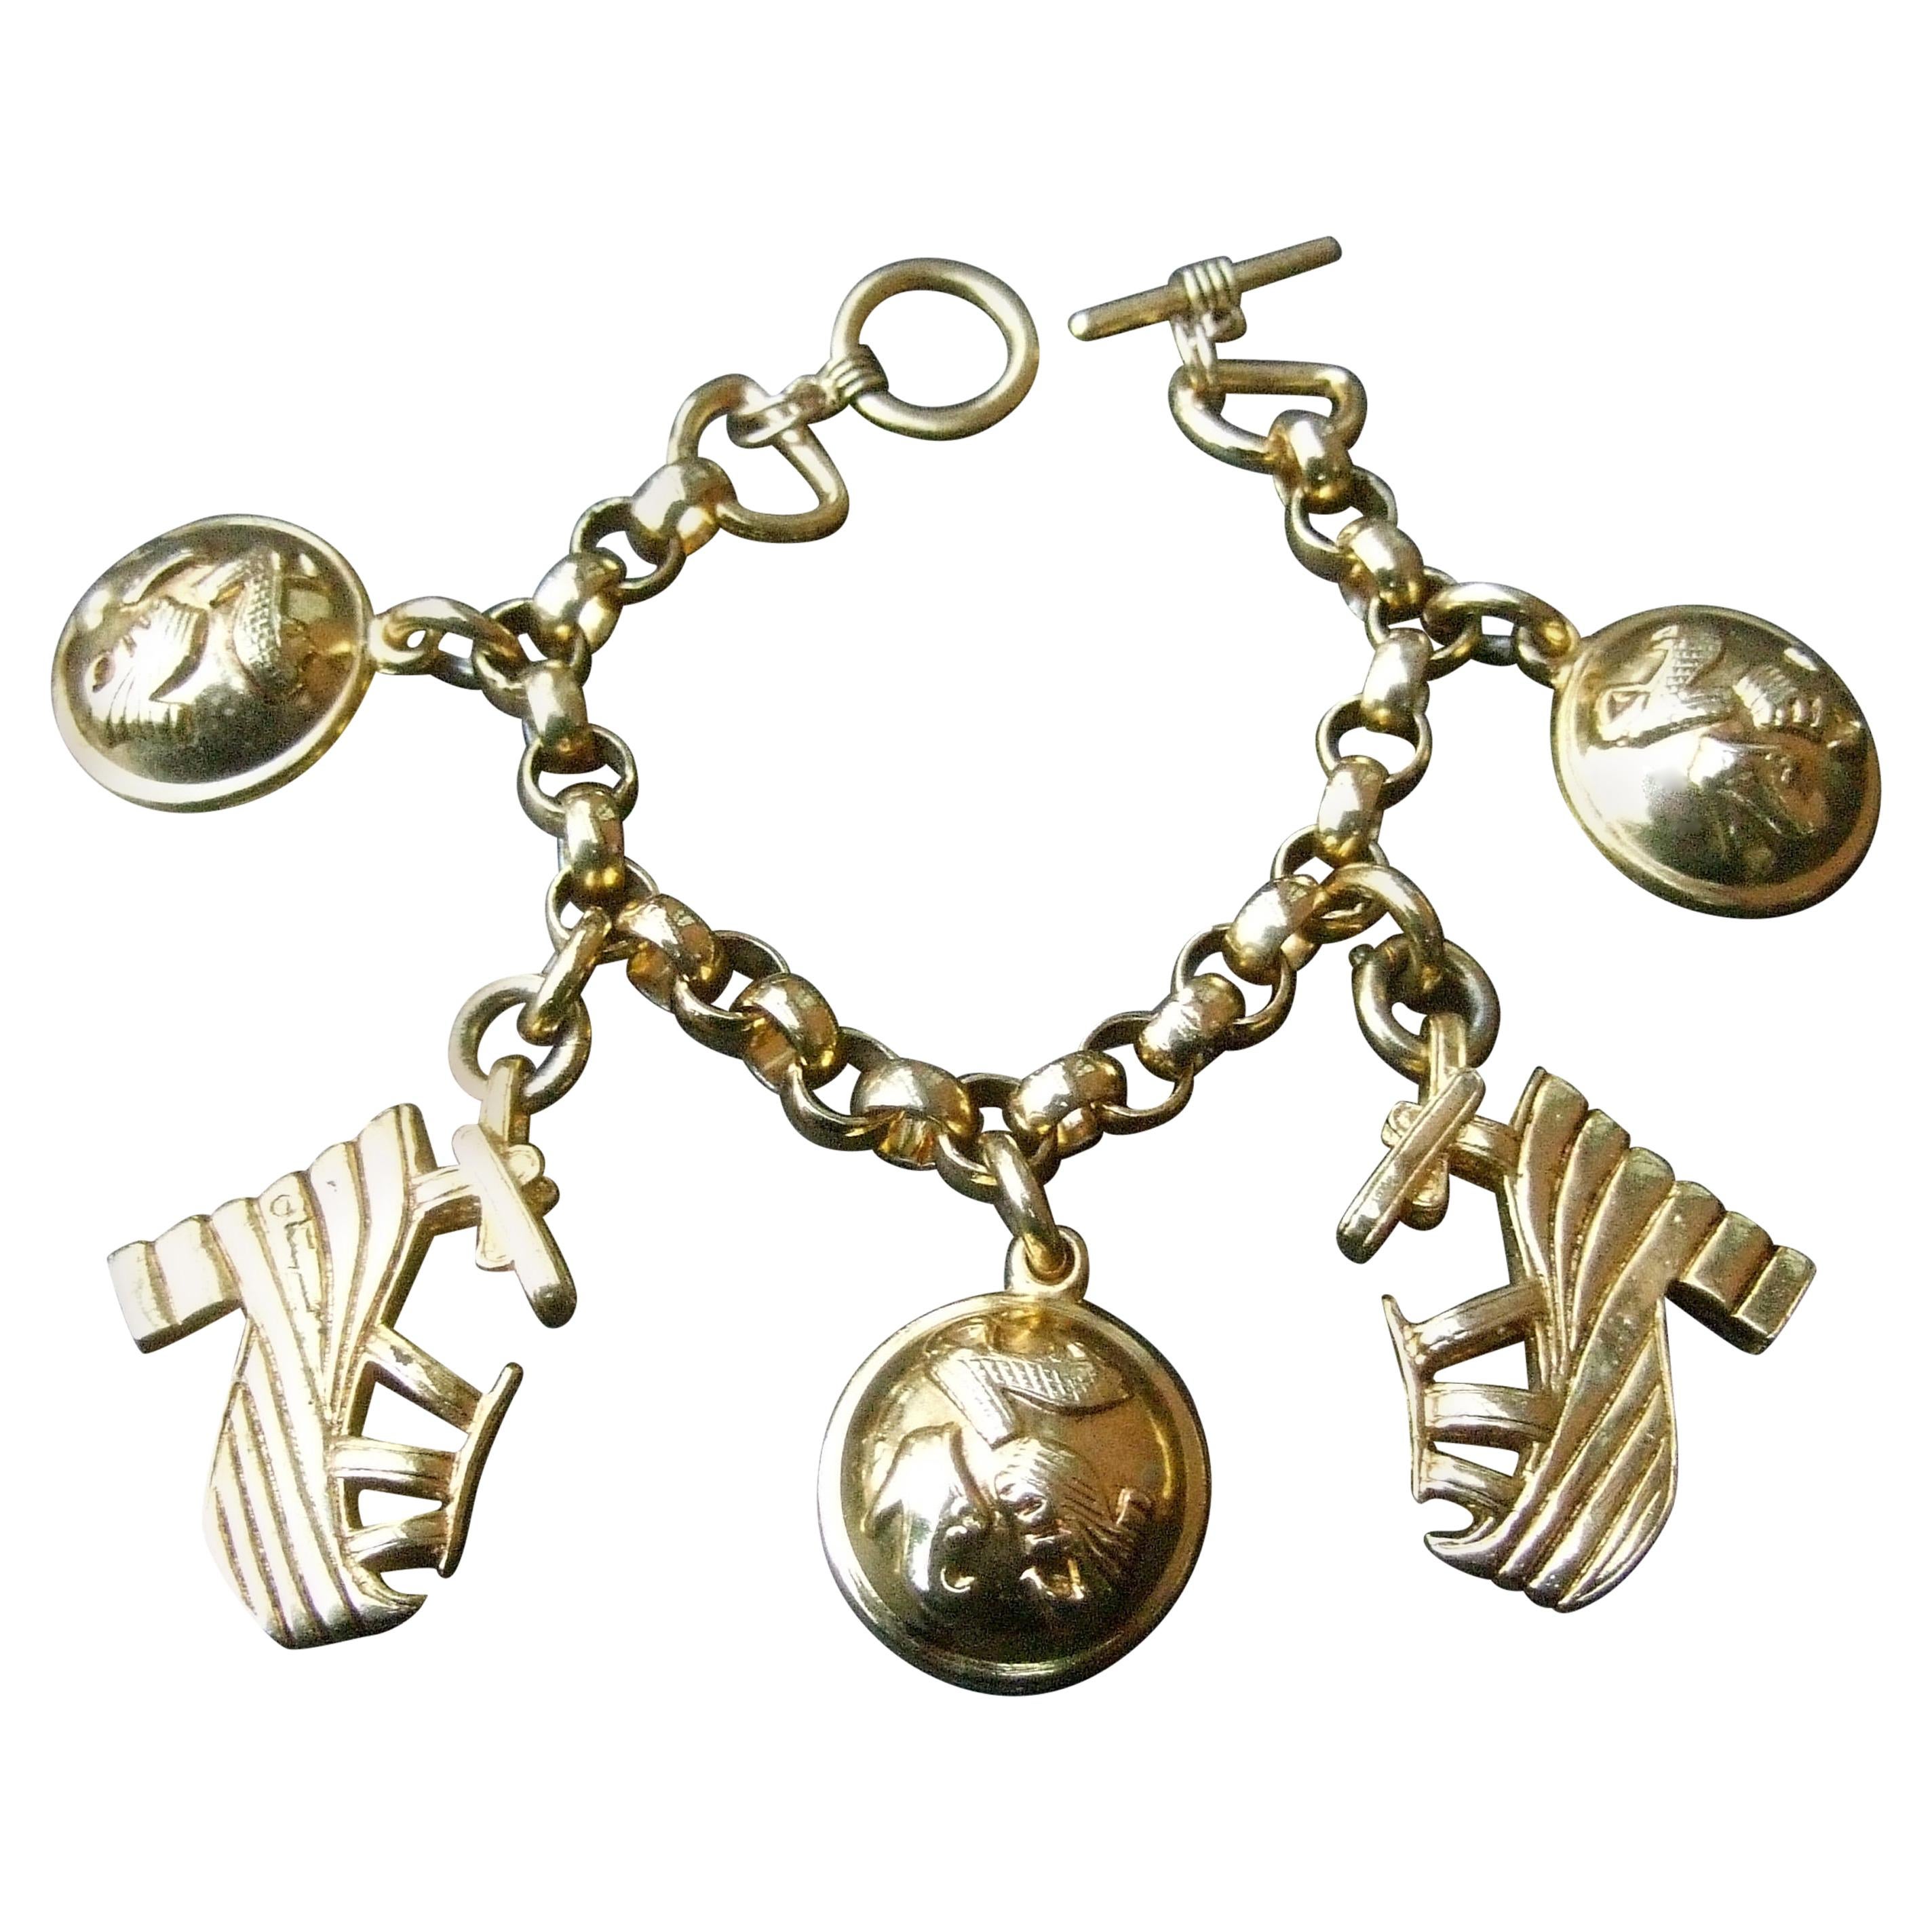 Salvatore Ferragamo Gilt Metal Shoe Themed Charm Bracelet c 1990s